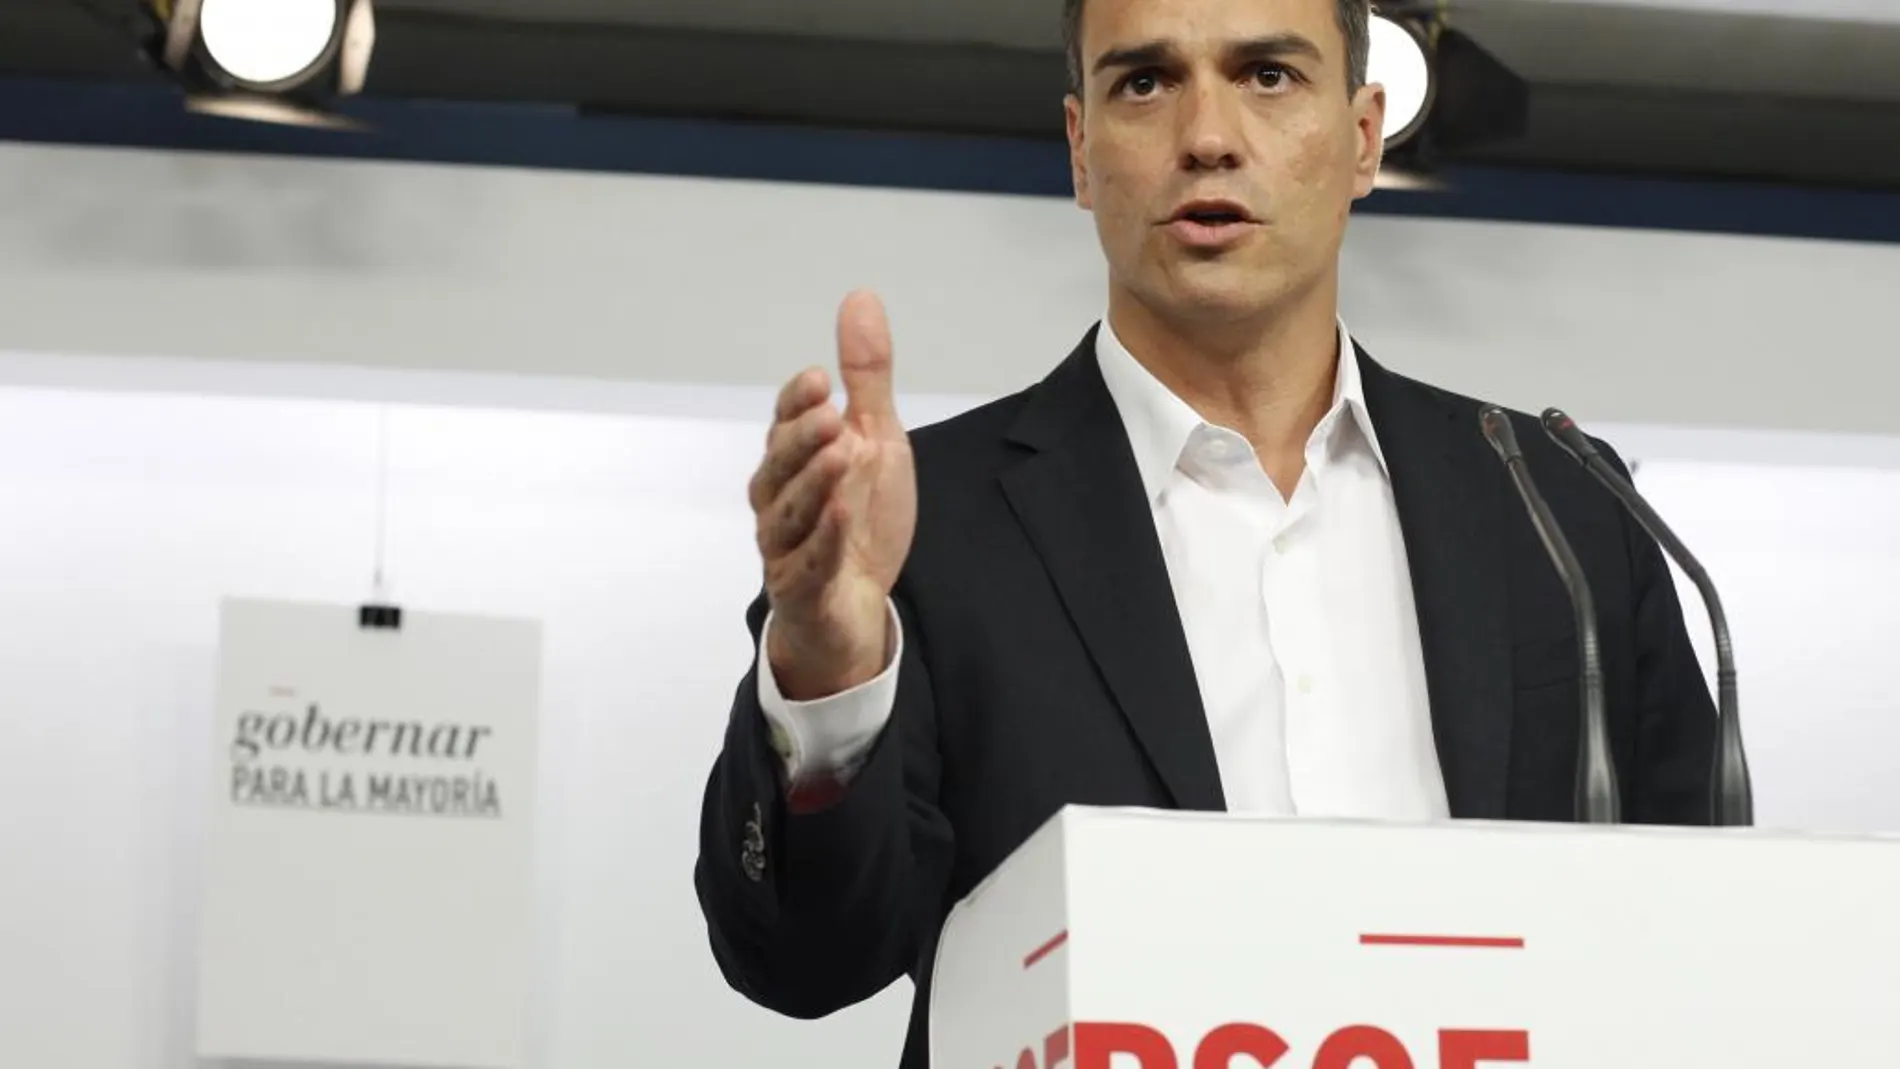 El secretario general del PSOE y candidato a las elecciones generales, Pedro Sánchez Pérez-Castejón